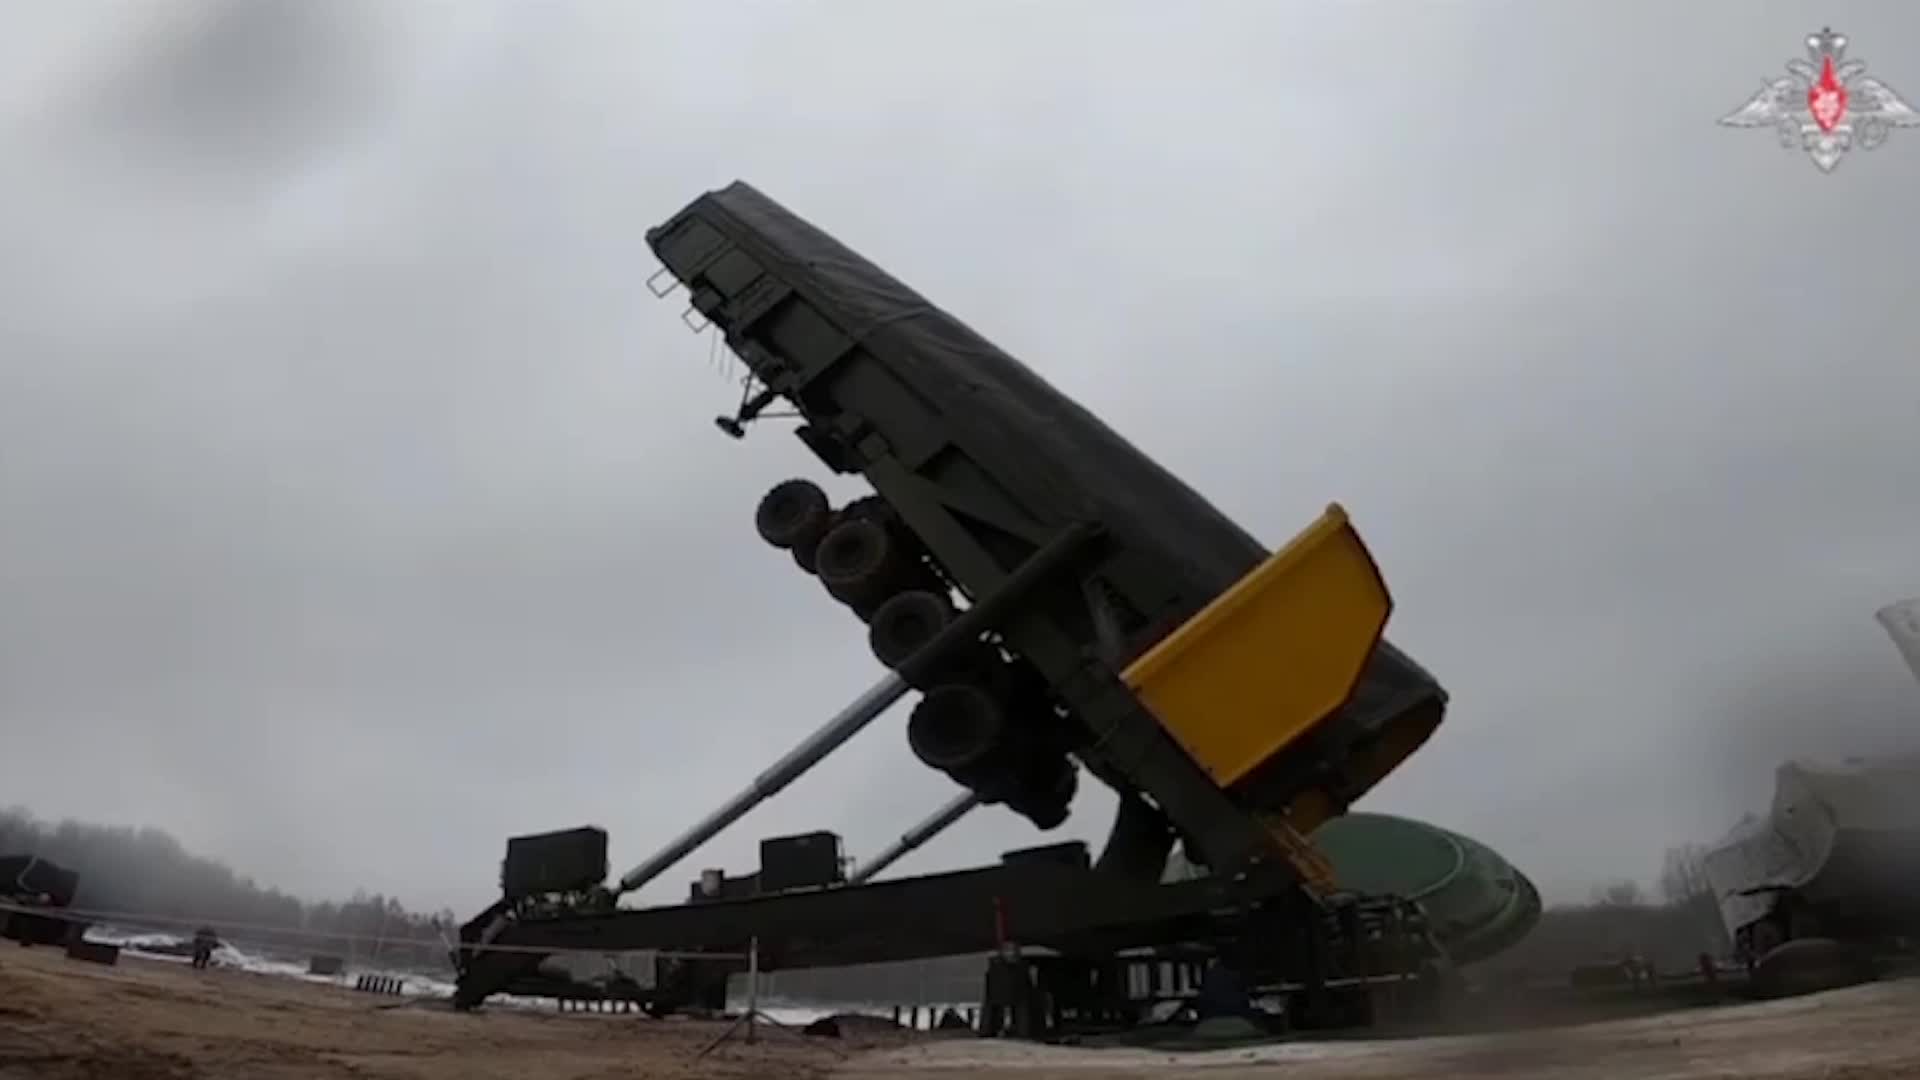 Макет ракеты «Ангара» установили на стартовый стол Восточного для испытаний (видео)